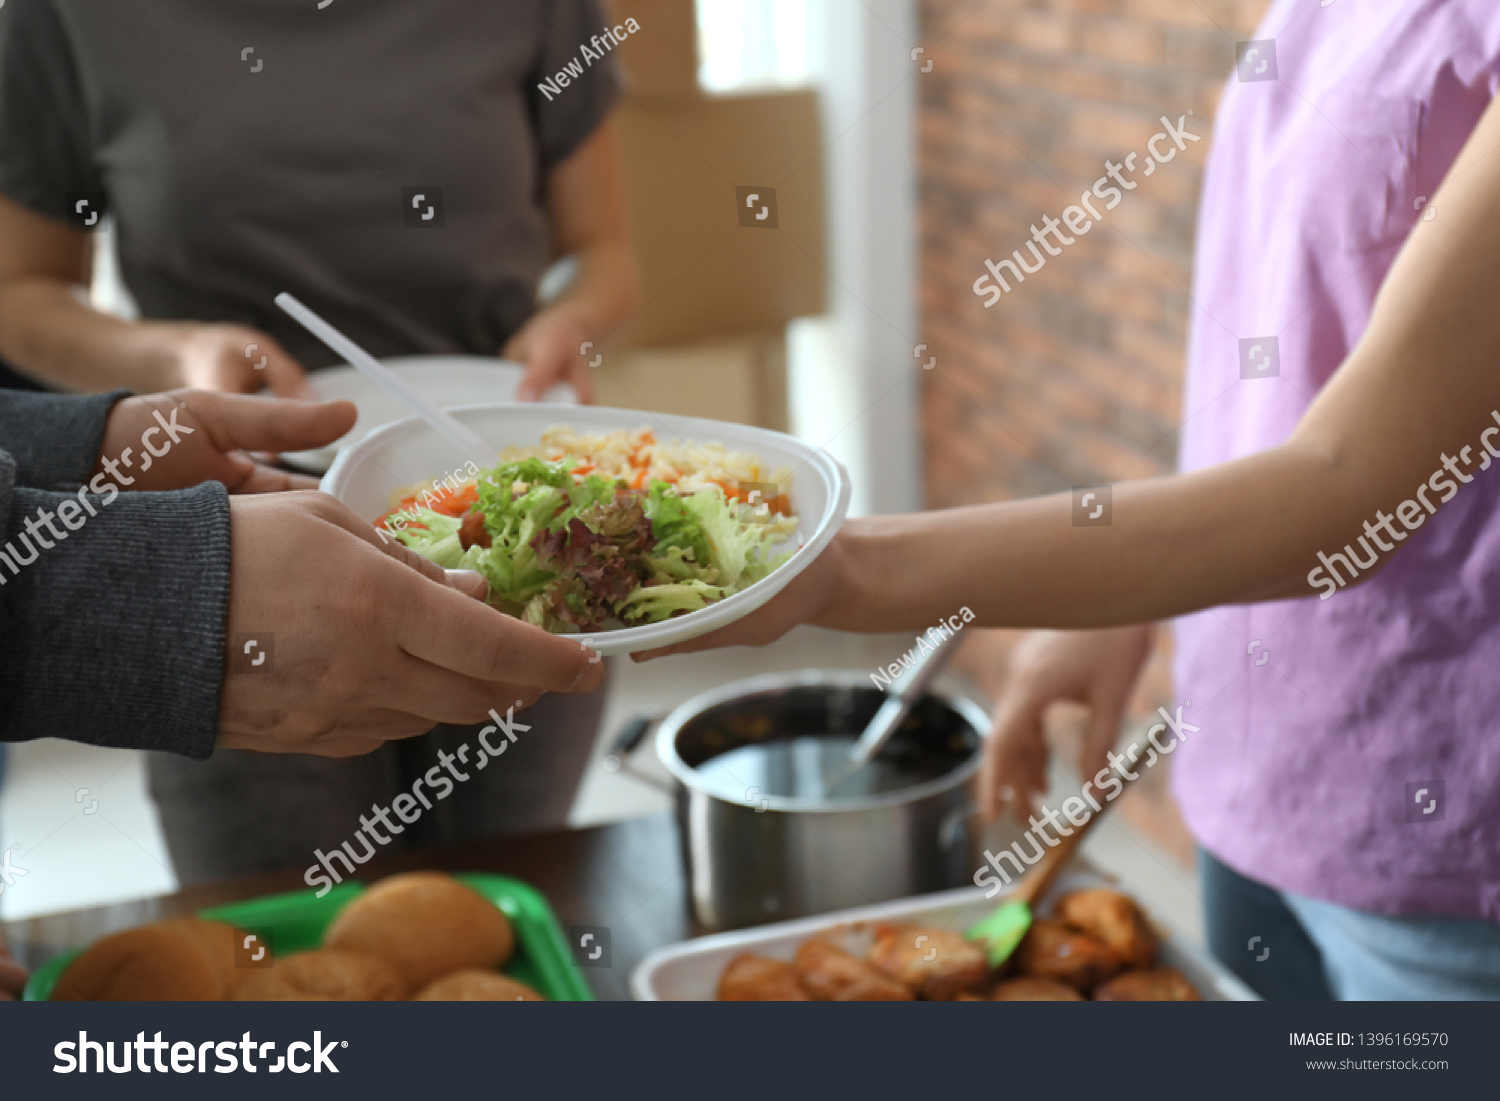 Poor man receiving food from volunteer indoors, closeup #1396169570